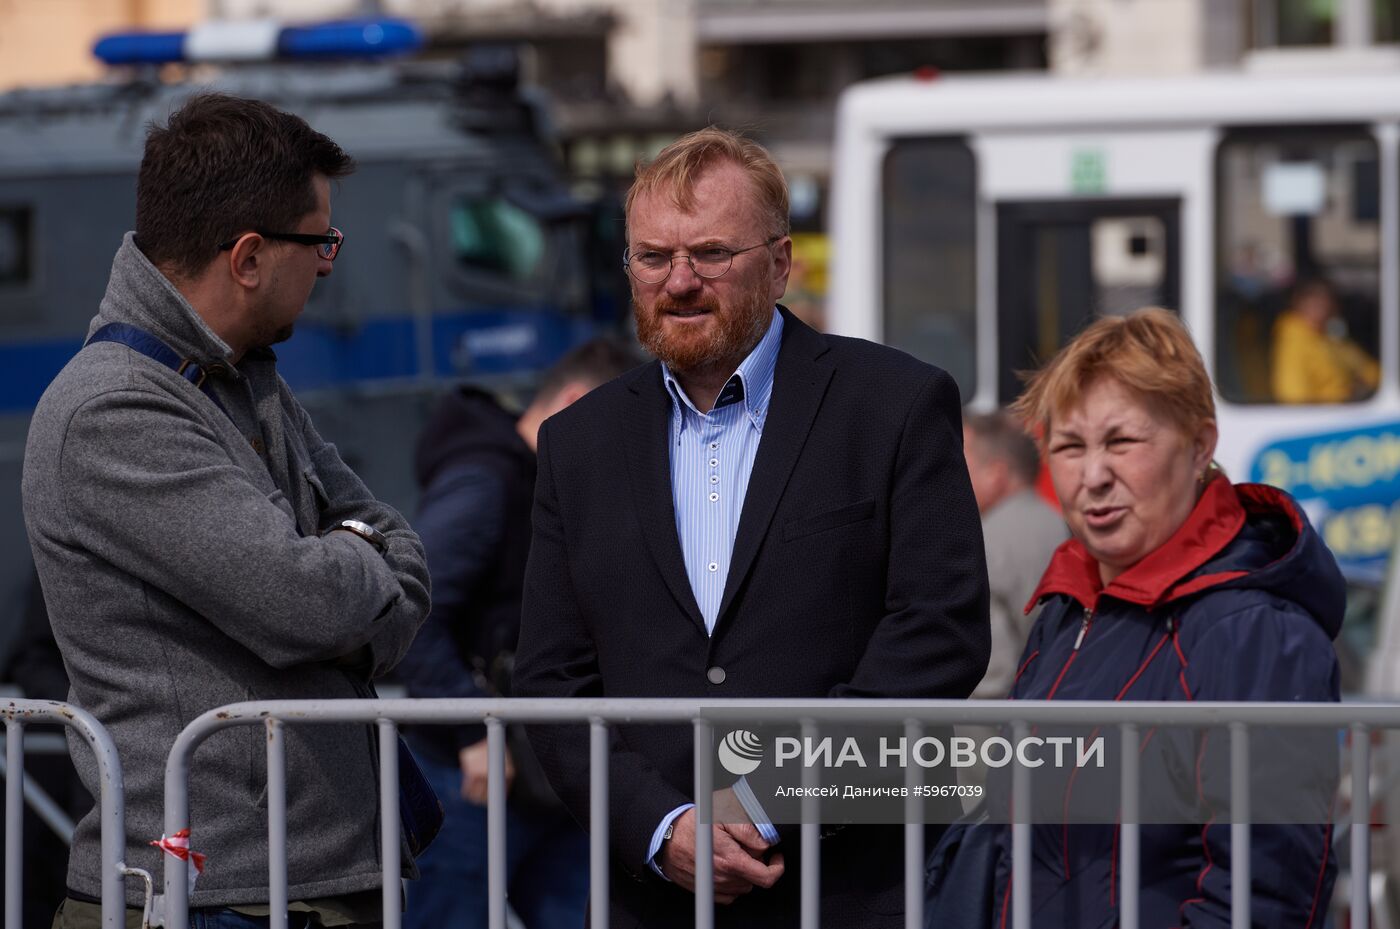 Пикеты в поддержку независимых кандидатов в муниципальные депутаты Москвы